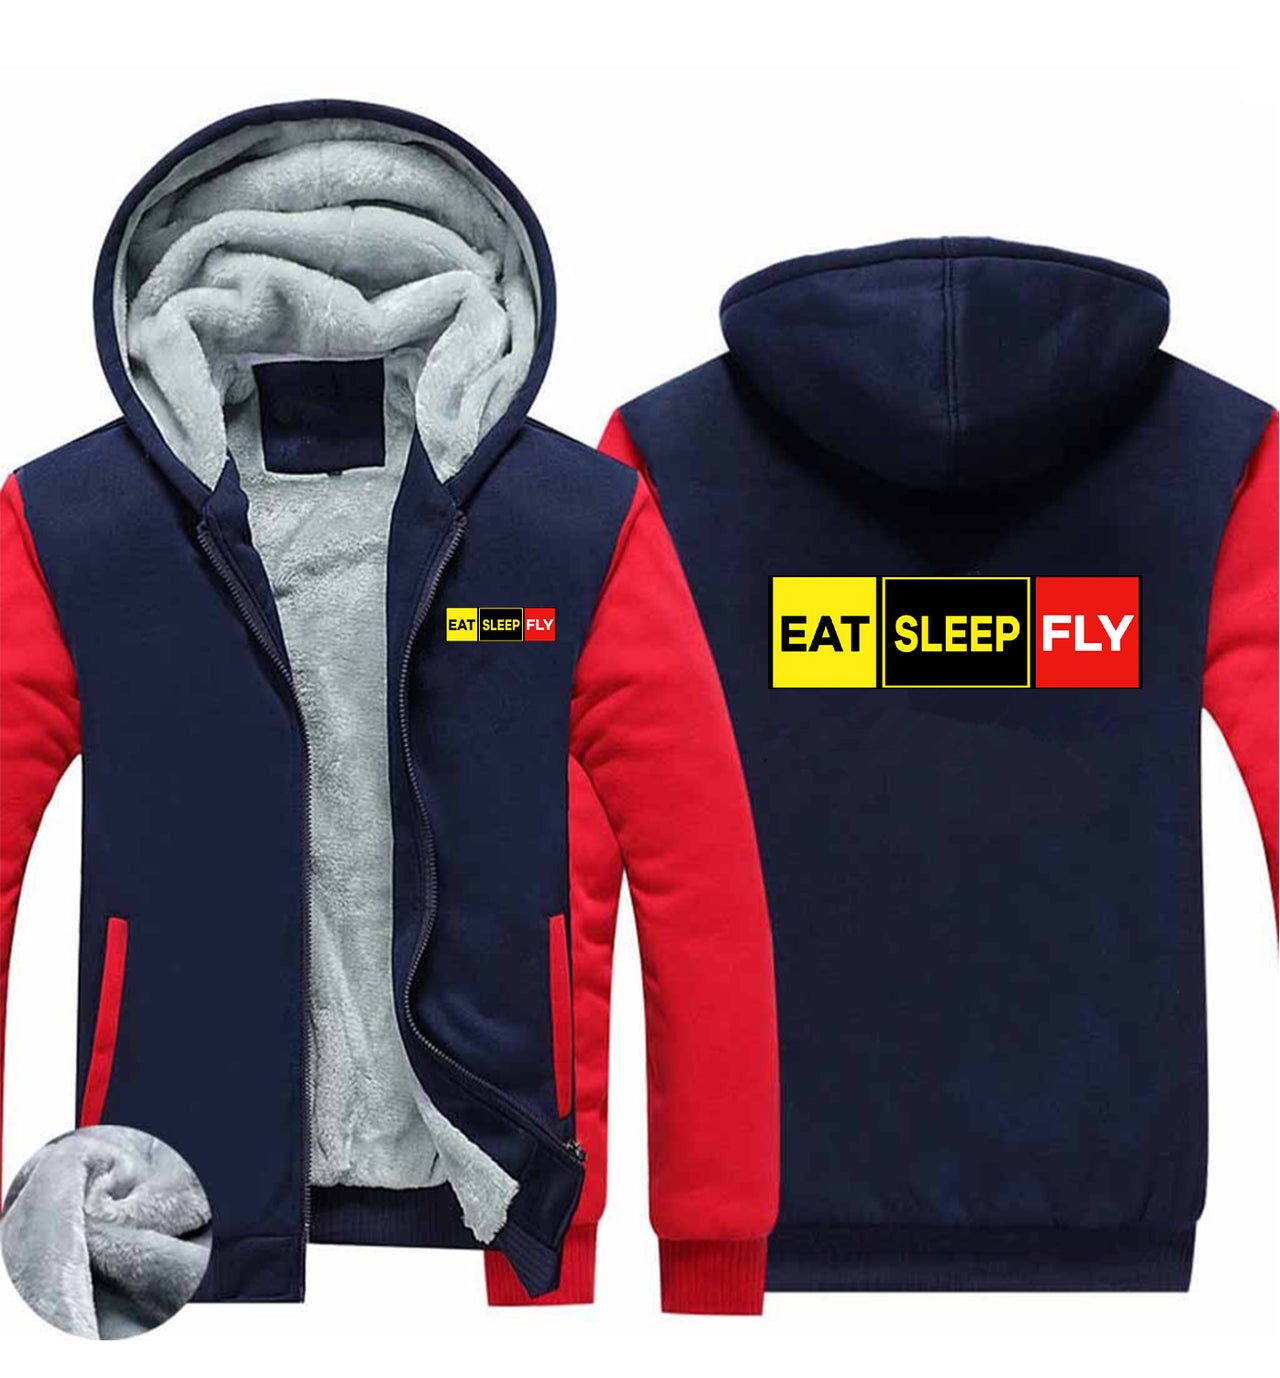 Eat Sleep Fly (Colourful) Designed Zipped Sweatshirts